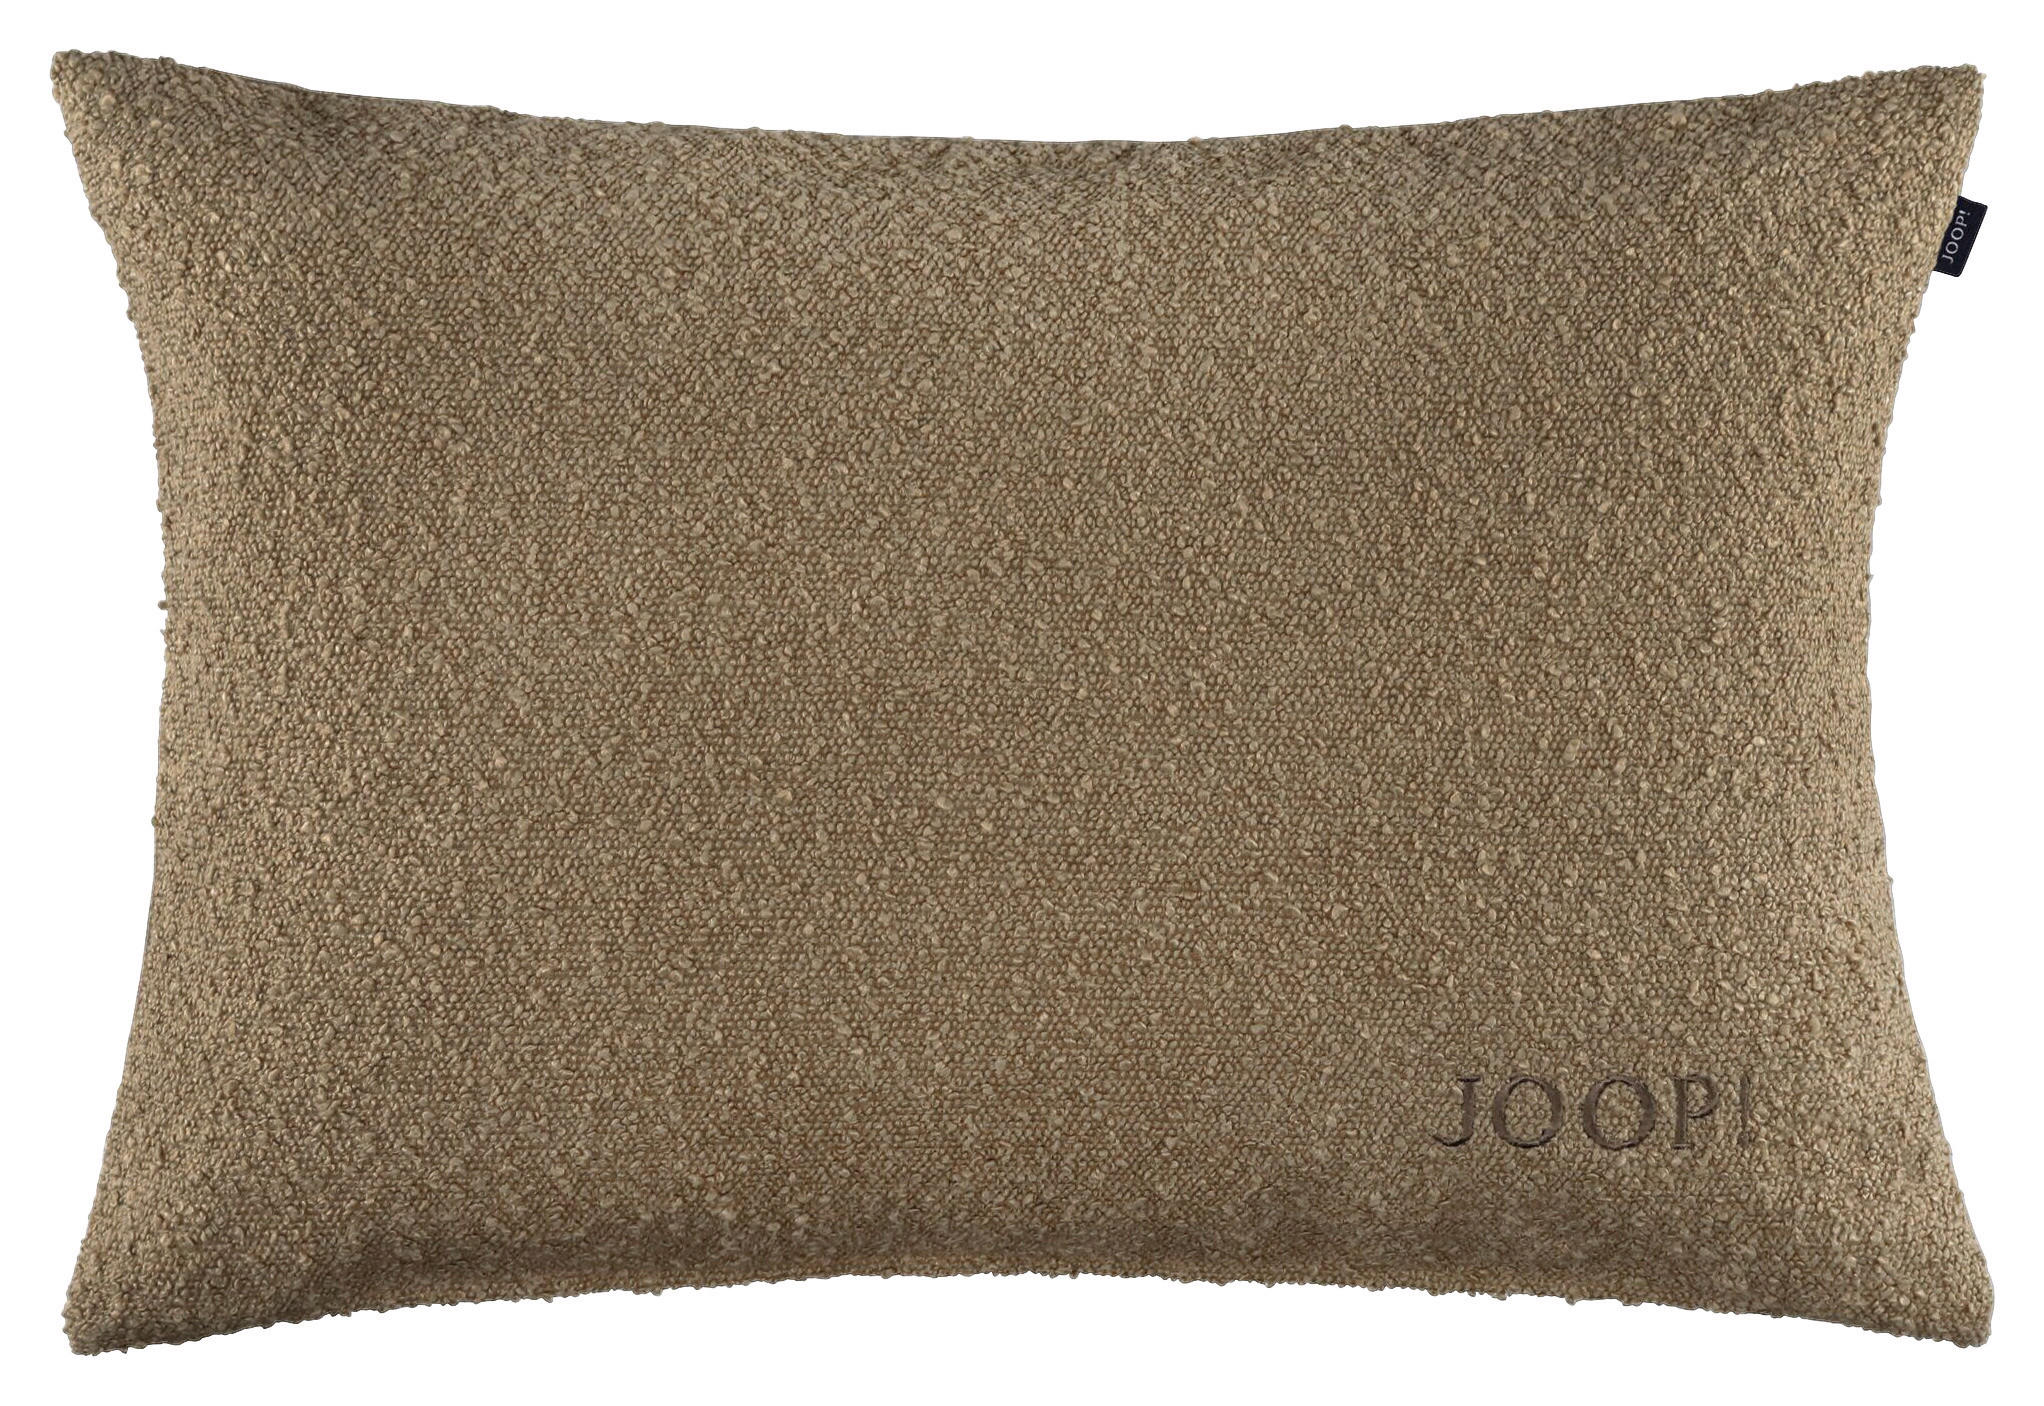 KISSENHÜLLE J! TOUCH 40/60 cm  - Sandfarben, Design, Textil (40/60cm) - Joop!